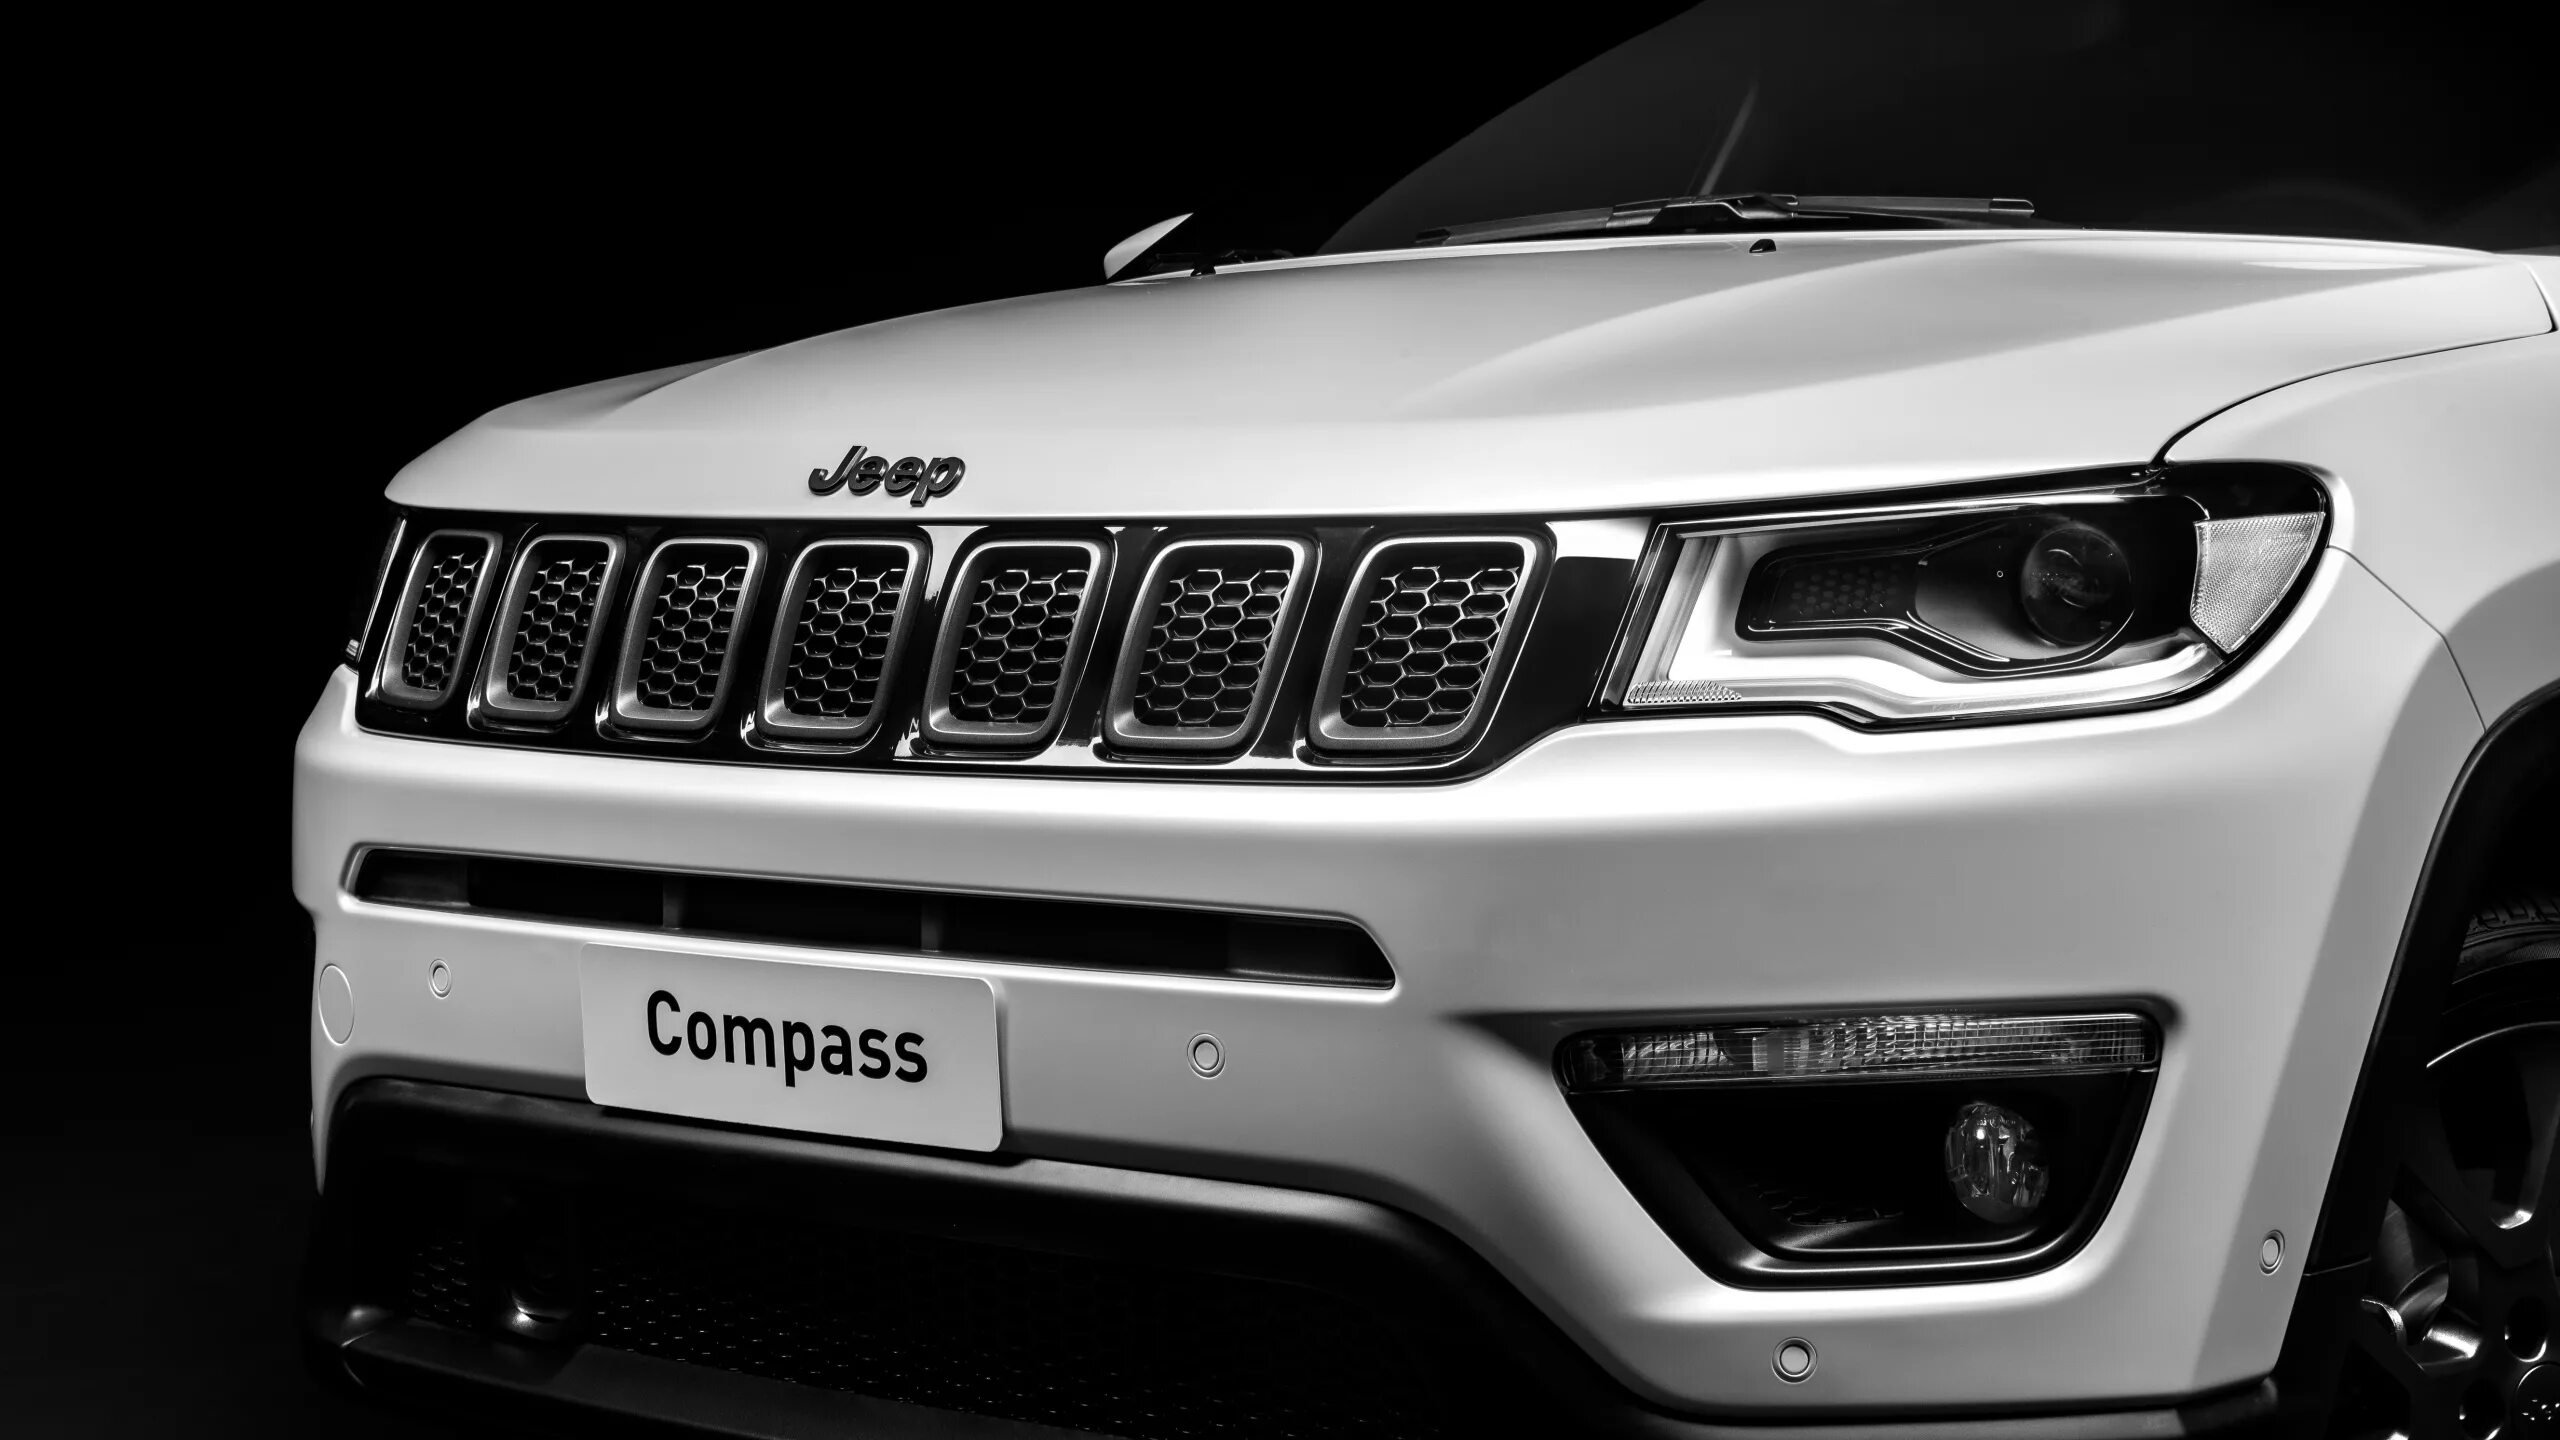 Jeep Compass s. Джип компас 2019 Найт игл. Багажник Jeep Grand Cherokee 4xe 2022-2023. Jeep Compass стекло лобовое артикул.